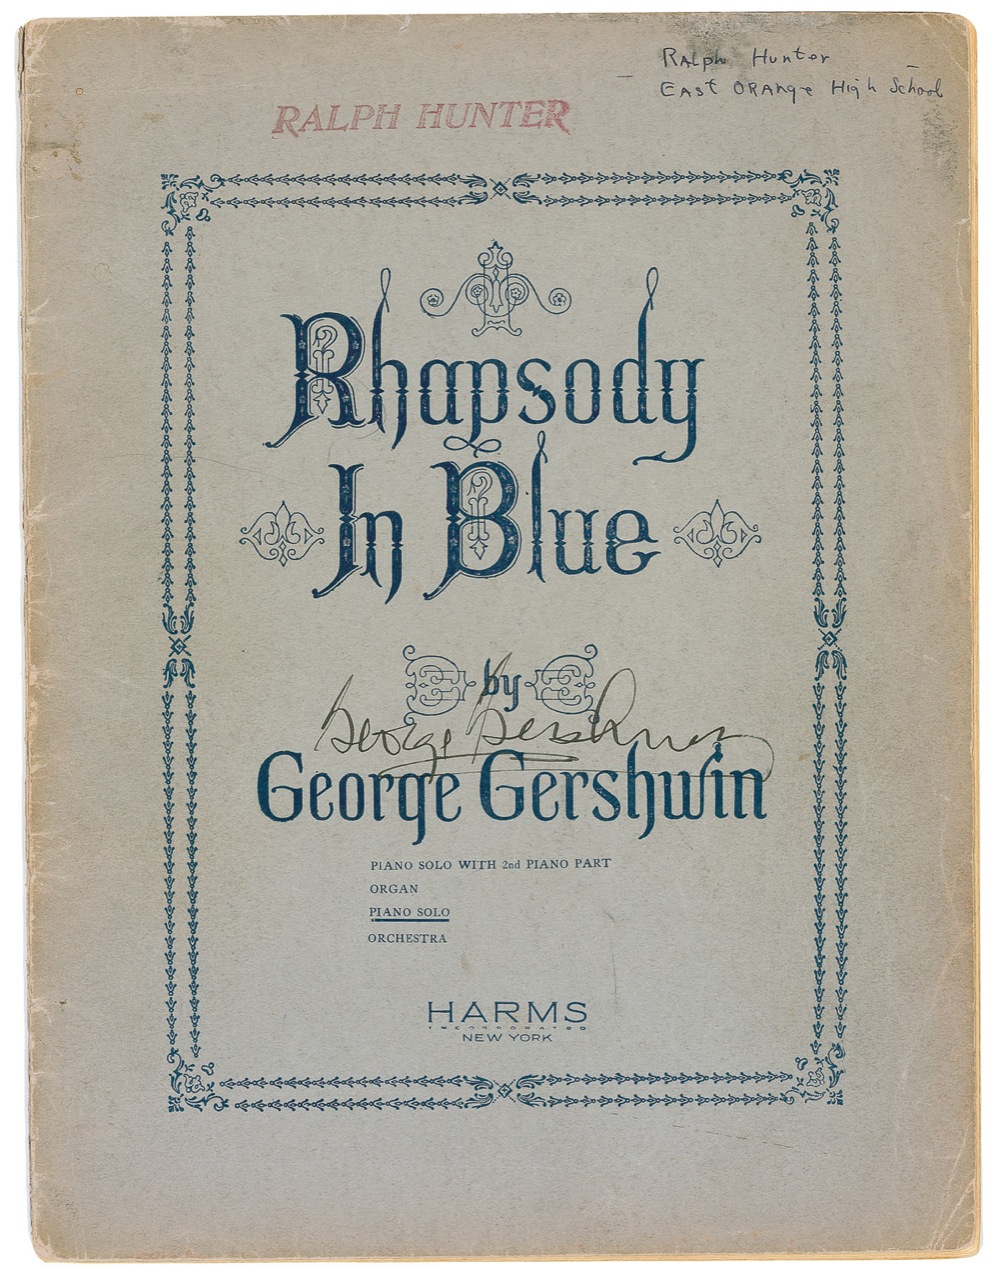 Lot #682 George Gershwin